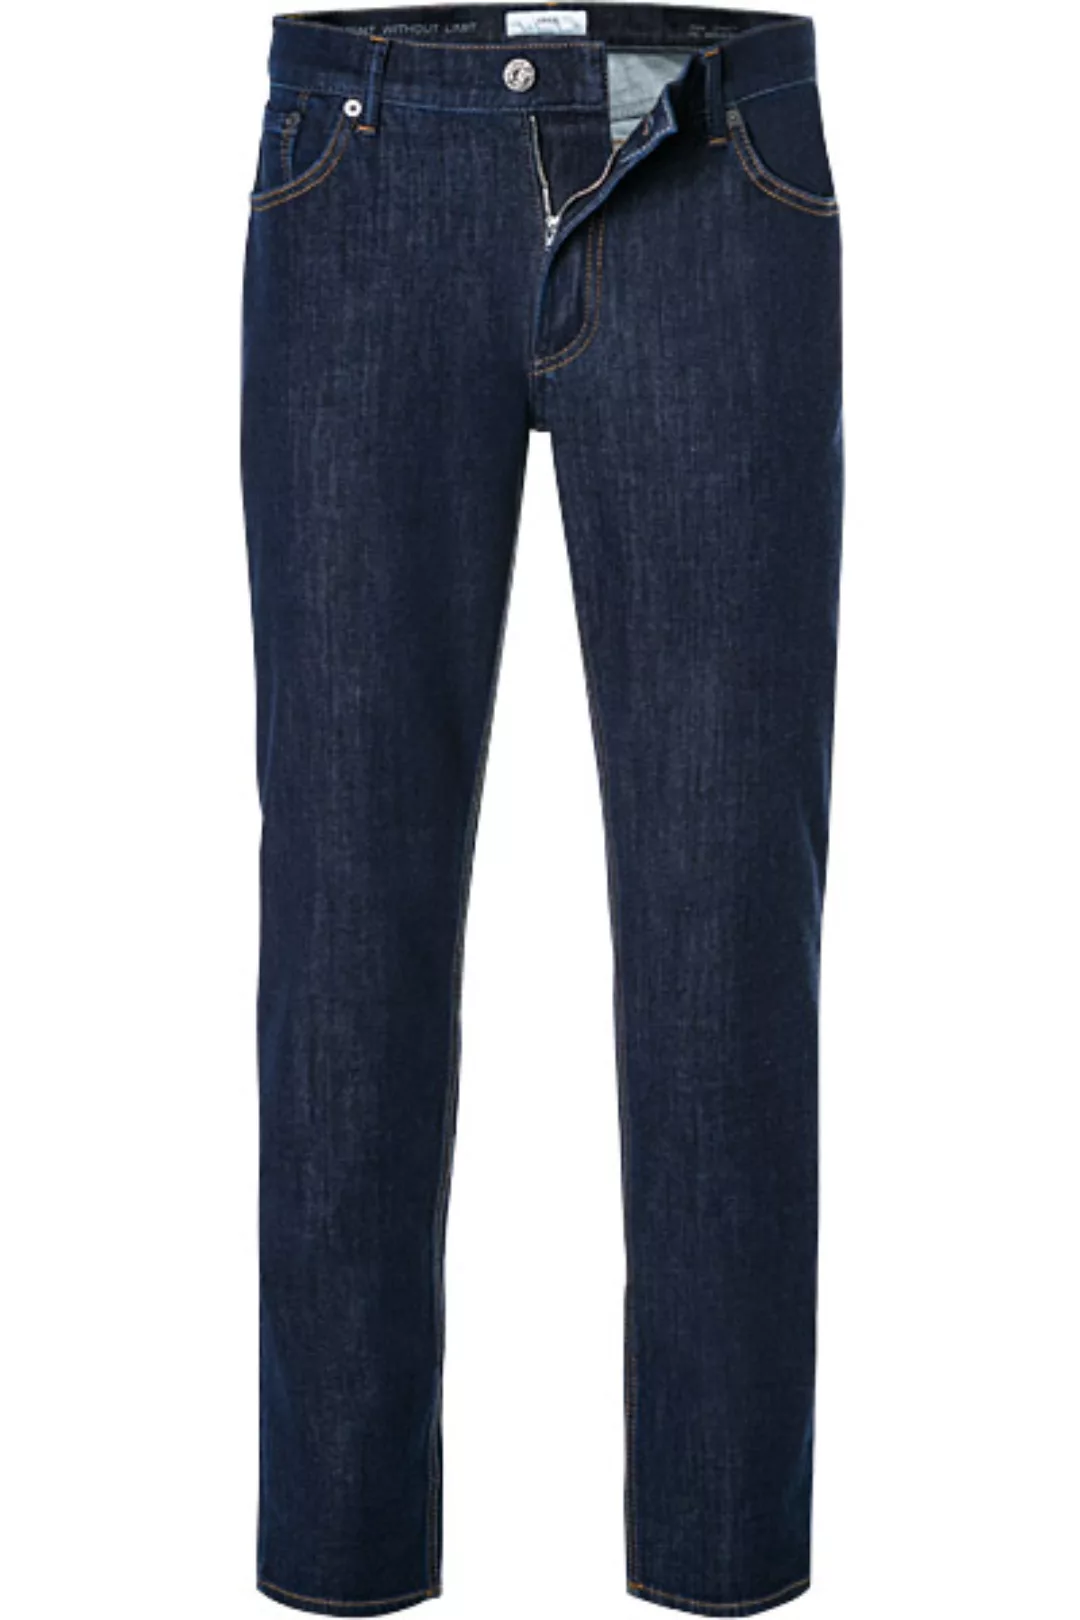 Brax Jeans 80-6440/CHUCK 079 630 20/23 günstig online kaufen